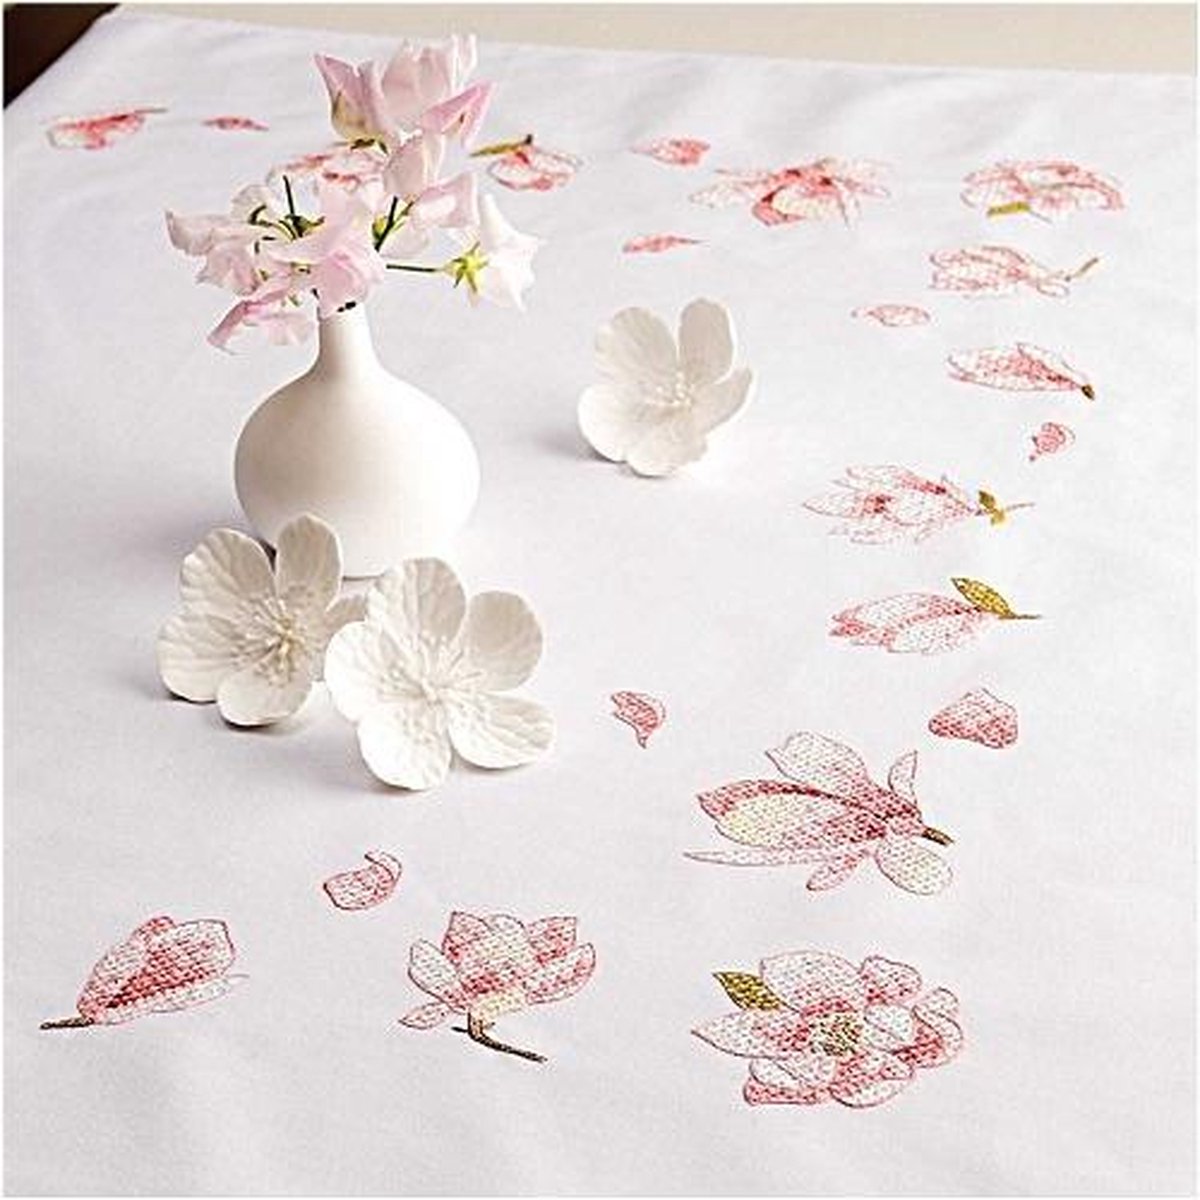 Voorbedrukt tafelkleed magnolia van Rico 67396.54.21 om te borduren 95x95cm  | bol.com